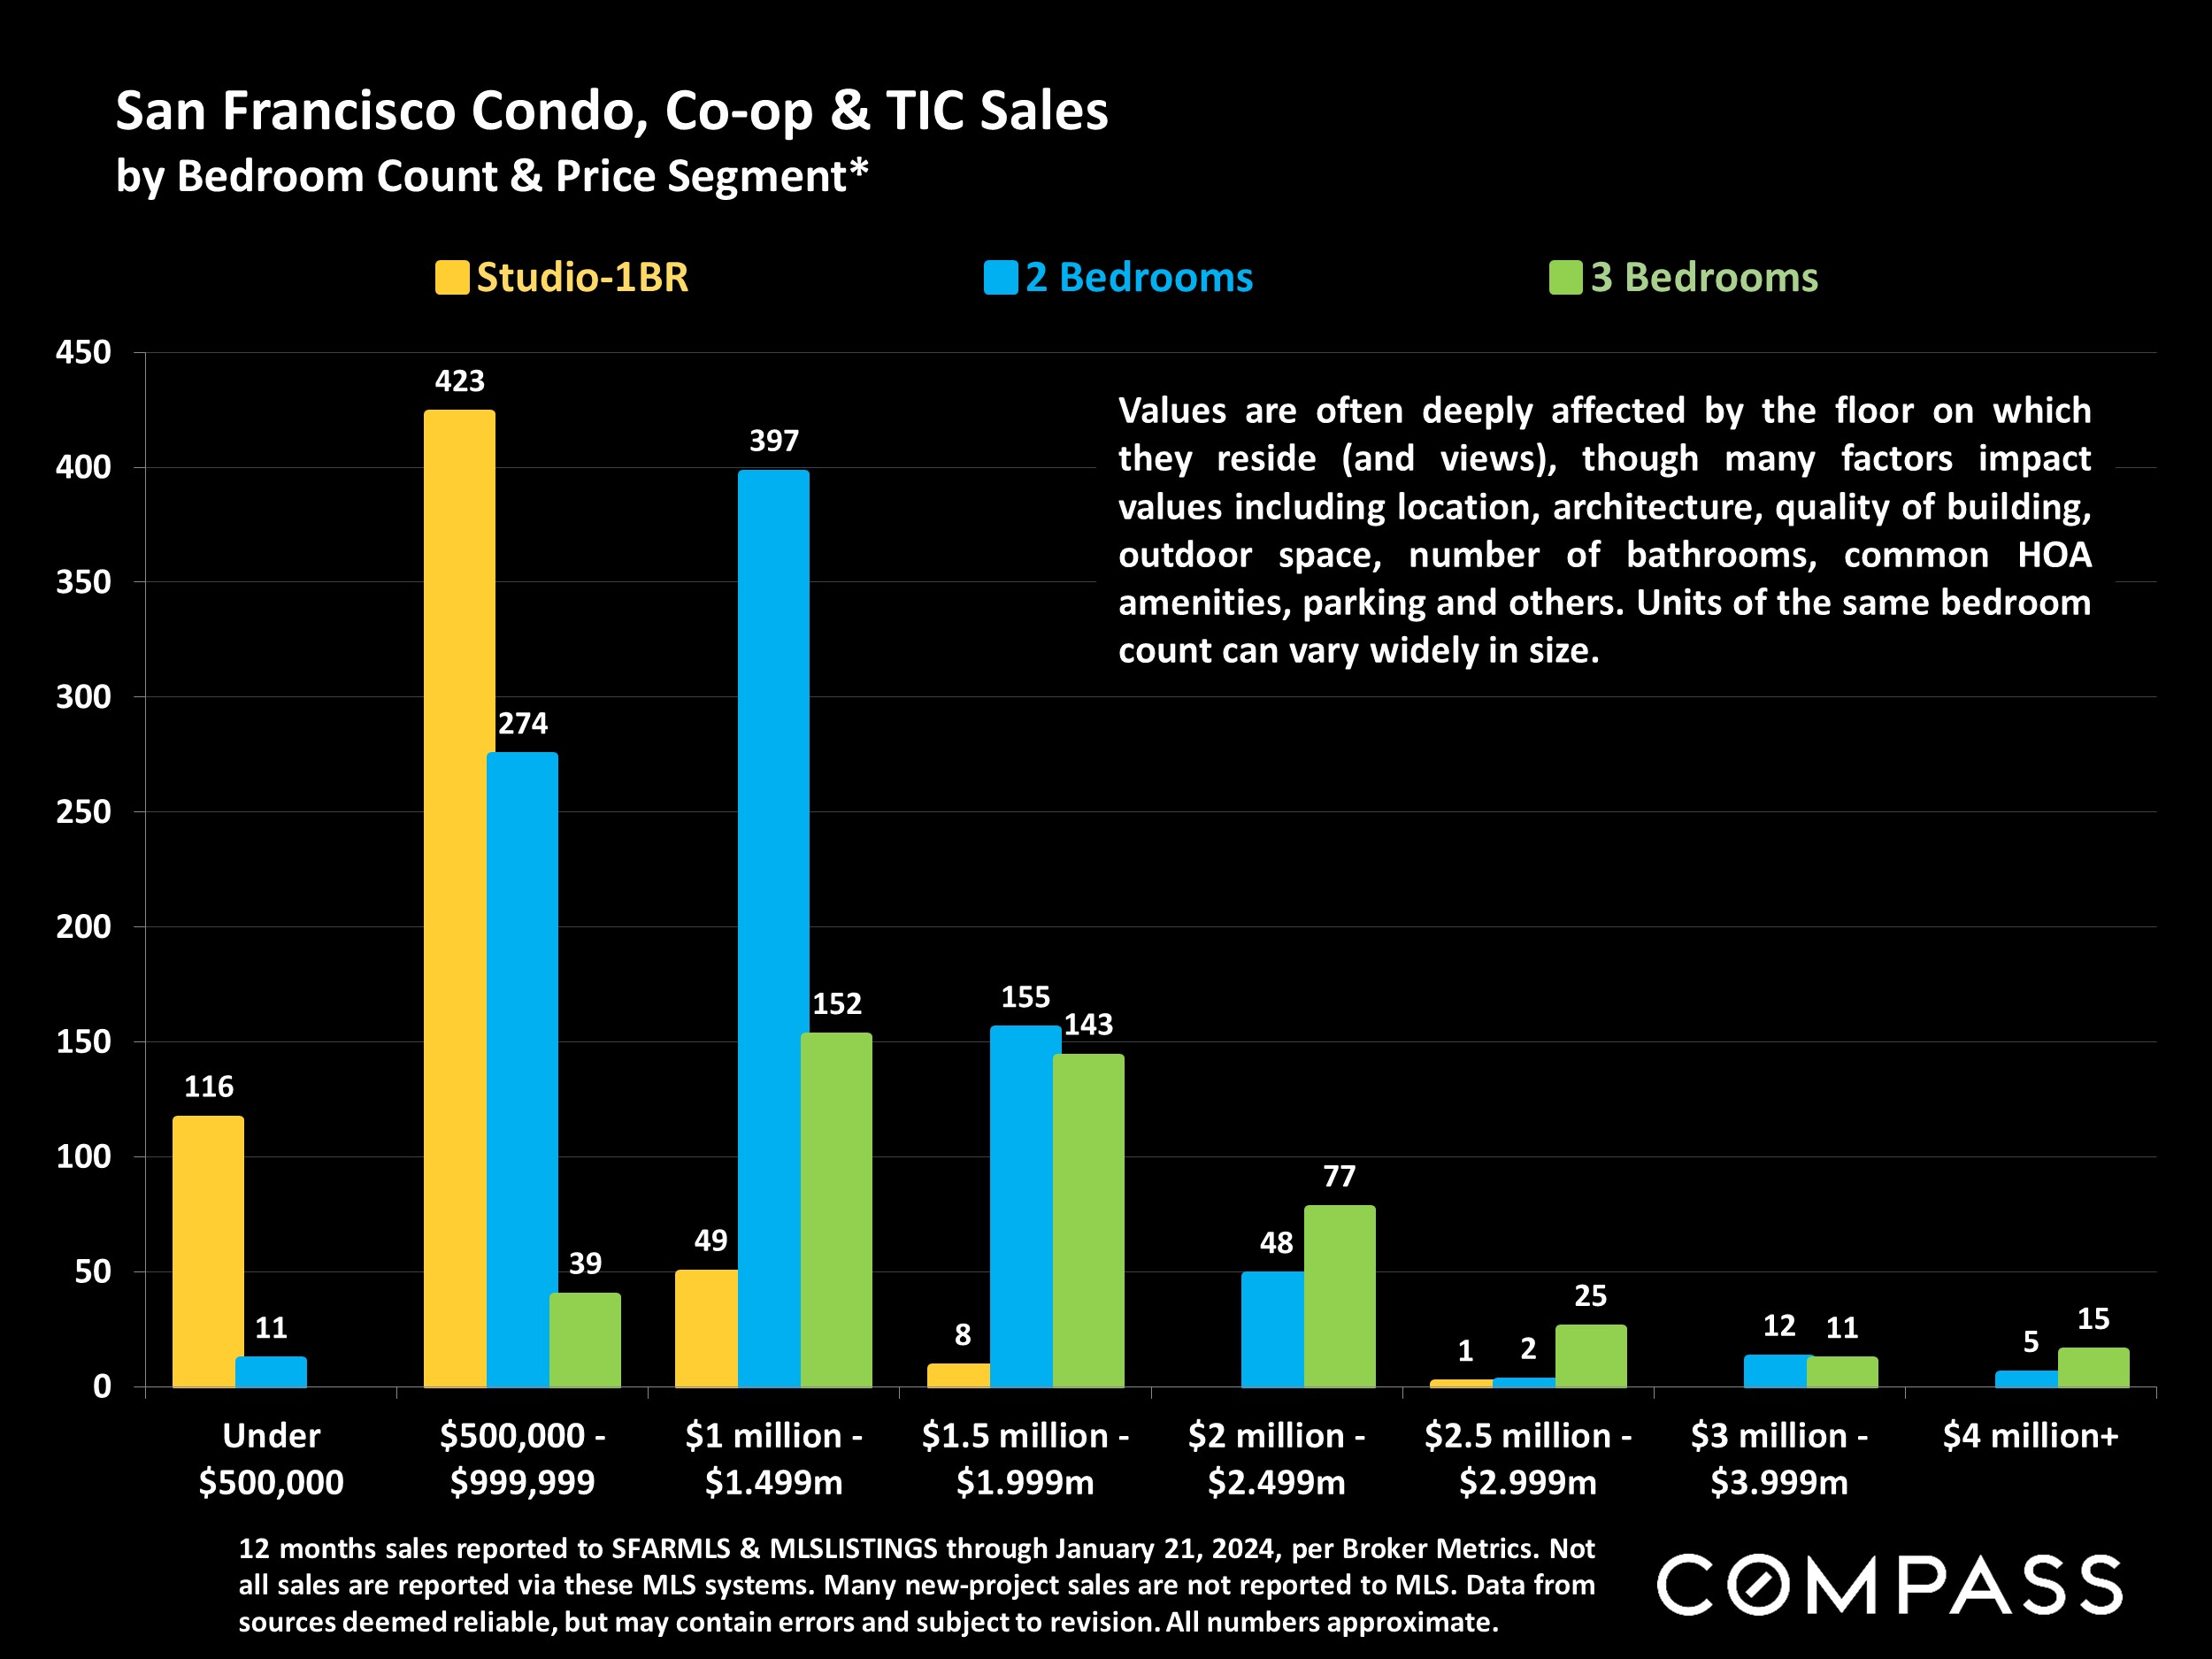 San Francisco Condo, Co-op & TIC Sales by Bedroom Count & Price Segment*